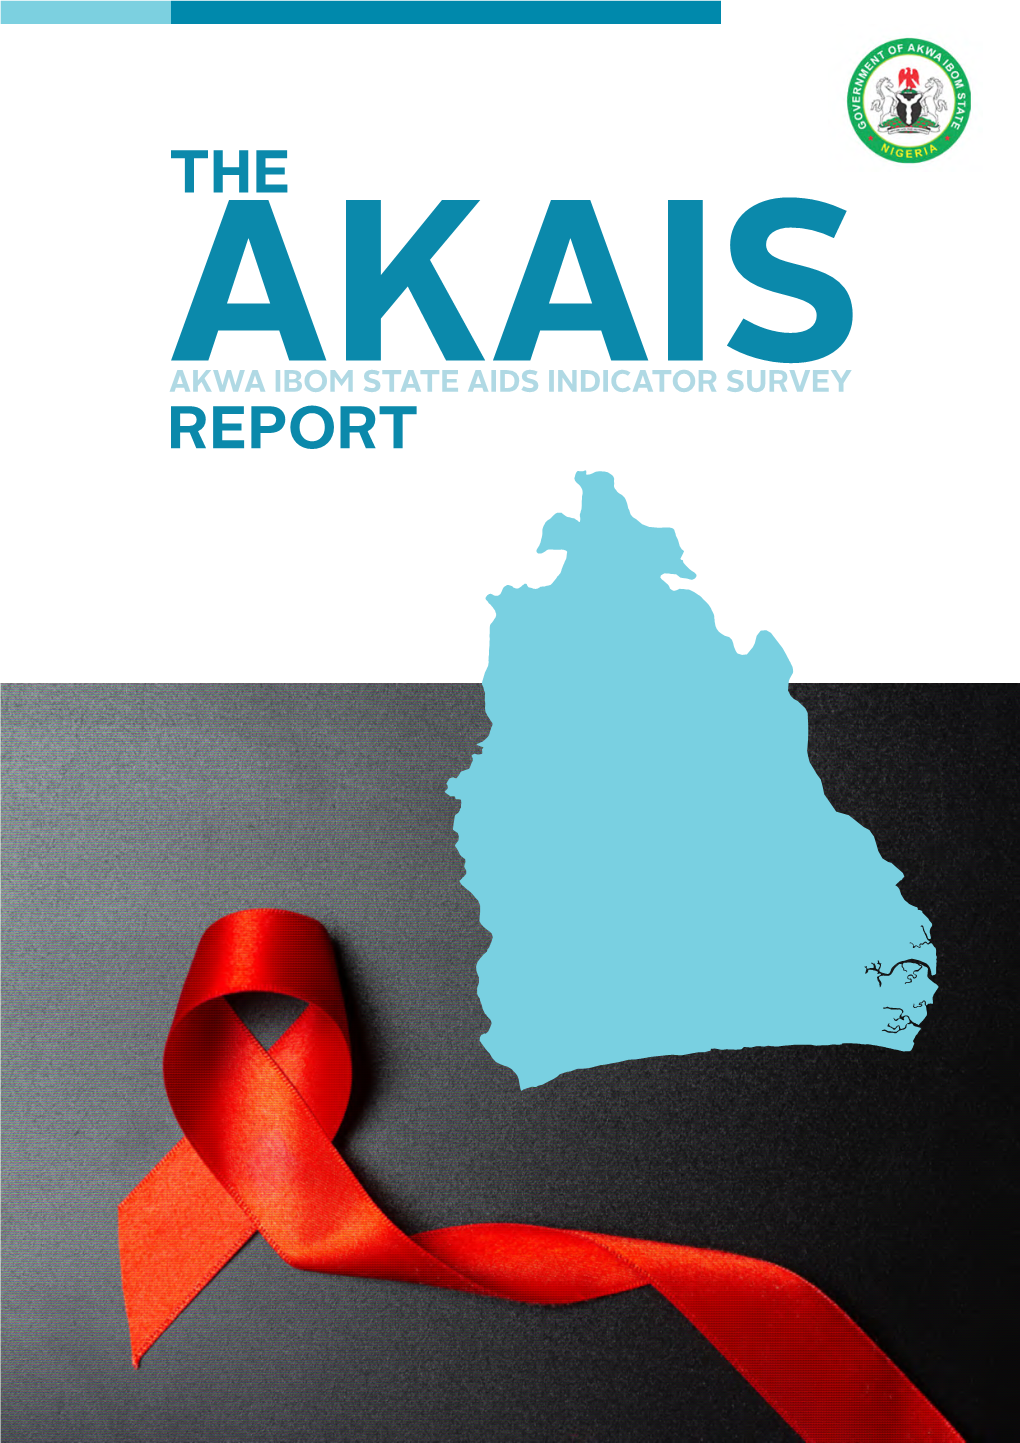 The AKAIS Report